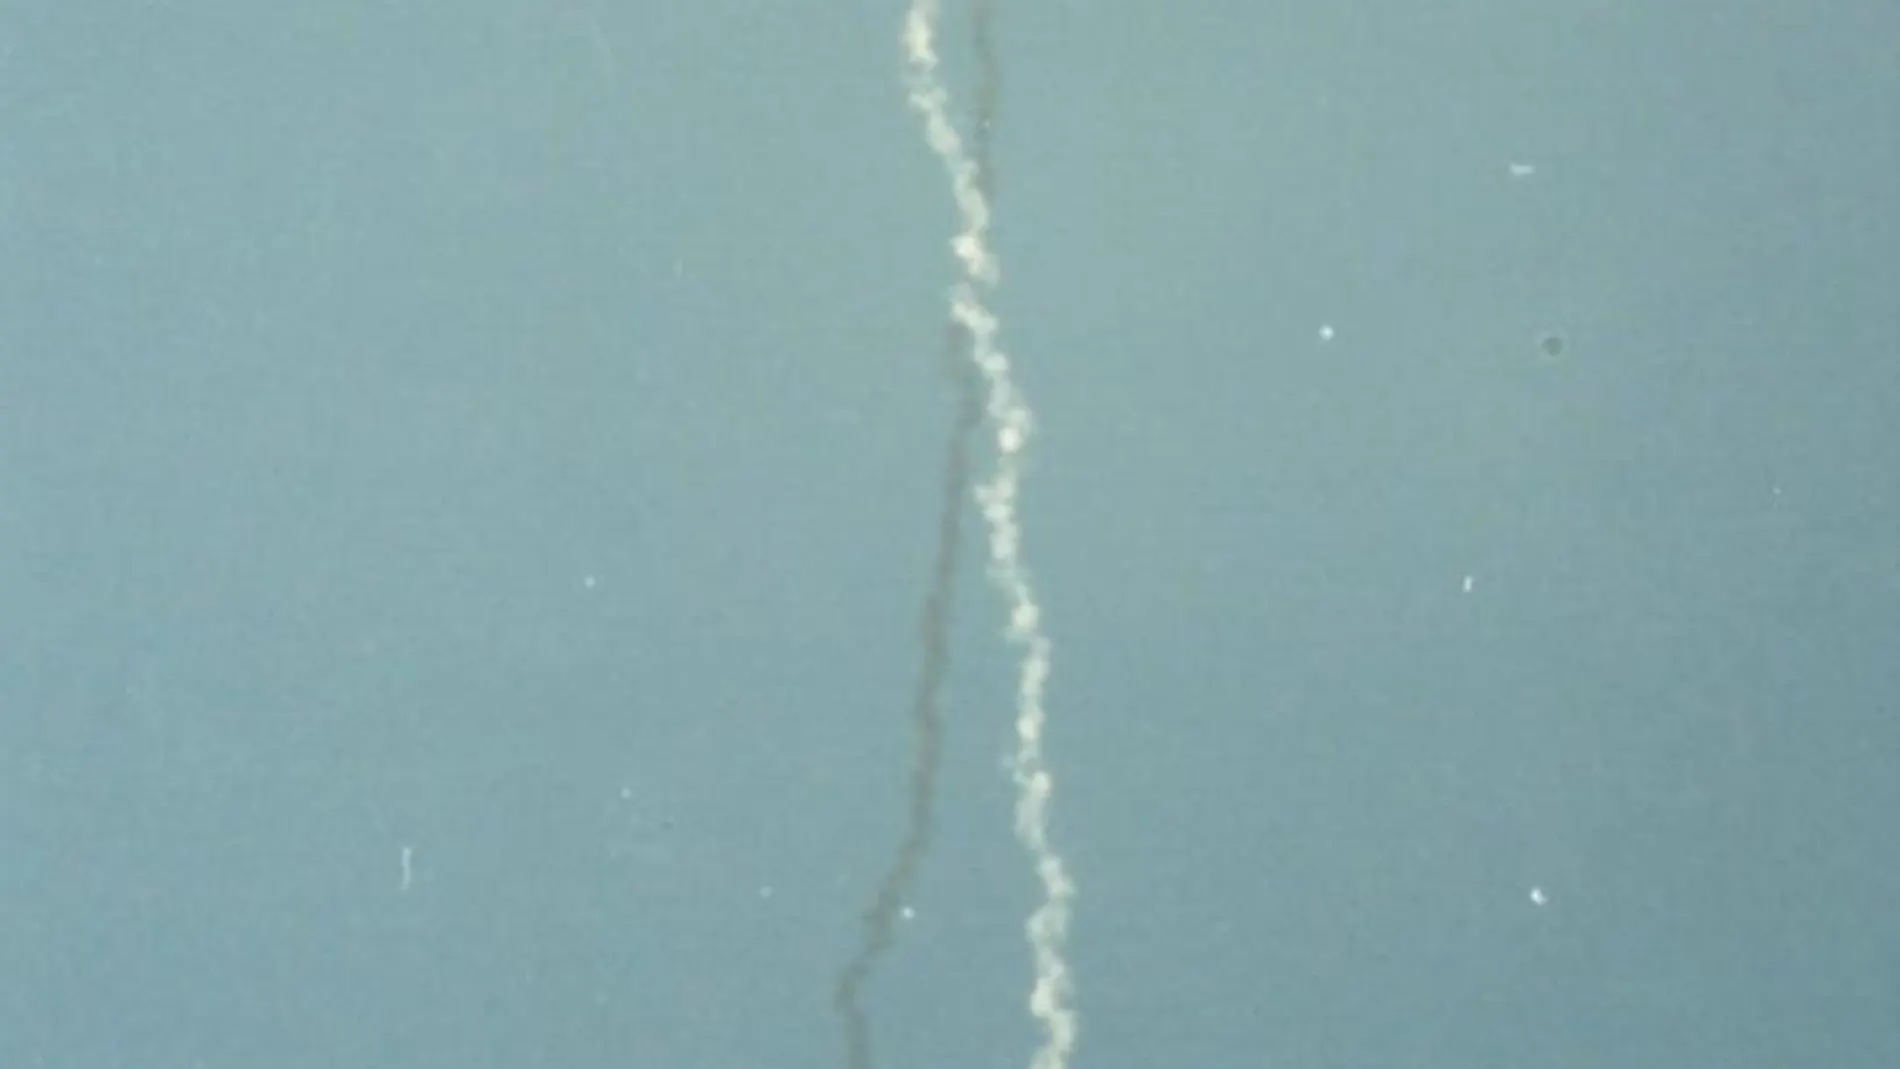 El Challenger fue reemplazado por el transbordador espacial Endeavour que voló por primera vez seis años después del accidente